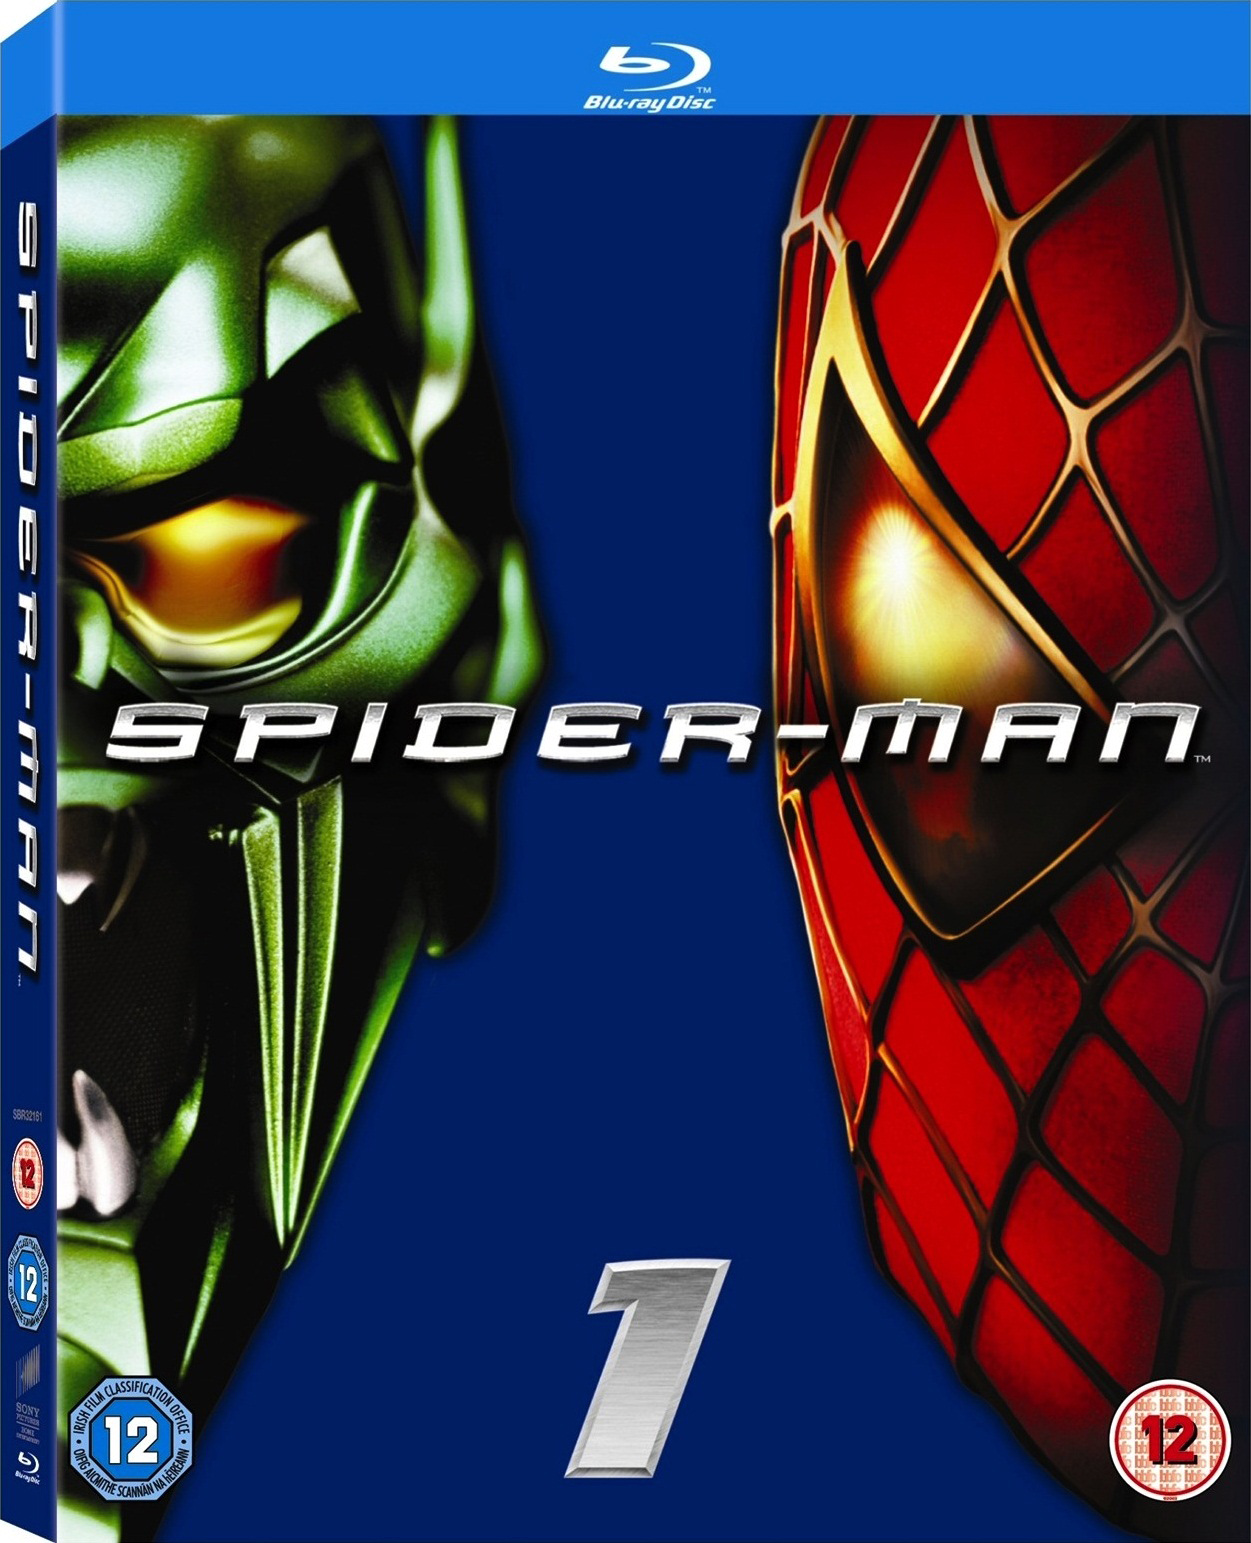 |倒序浏览 |阅读模式 [蜘蛛侠1].Spider-Man.2002.EUR.UHD.BluRay.2160p.HEVC.TrueHD.7.1-NIMA4K   55.86G-4.jpg